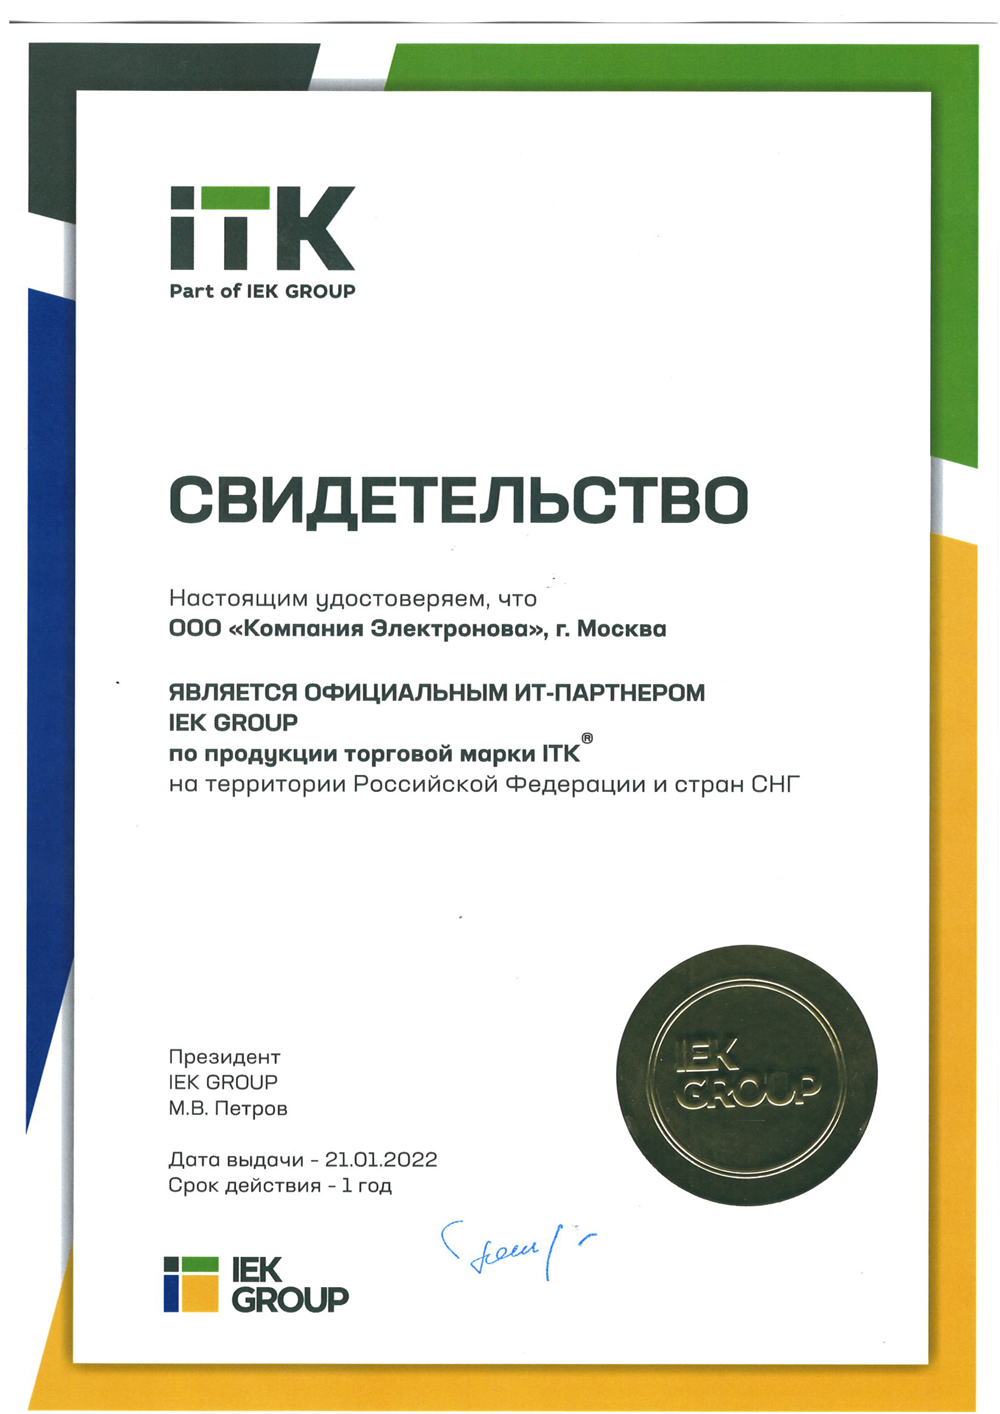 Электронова официальный партнер ITK